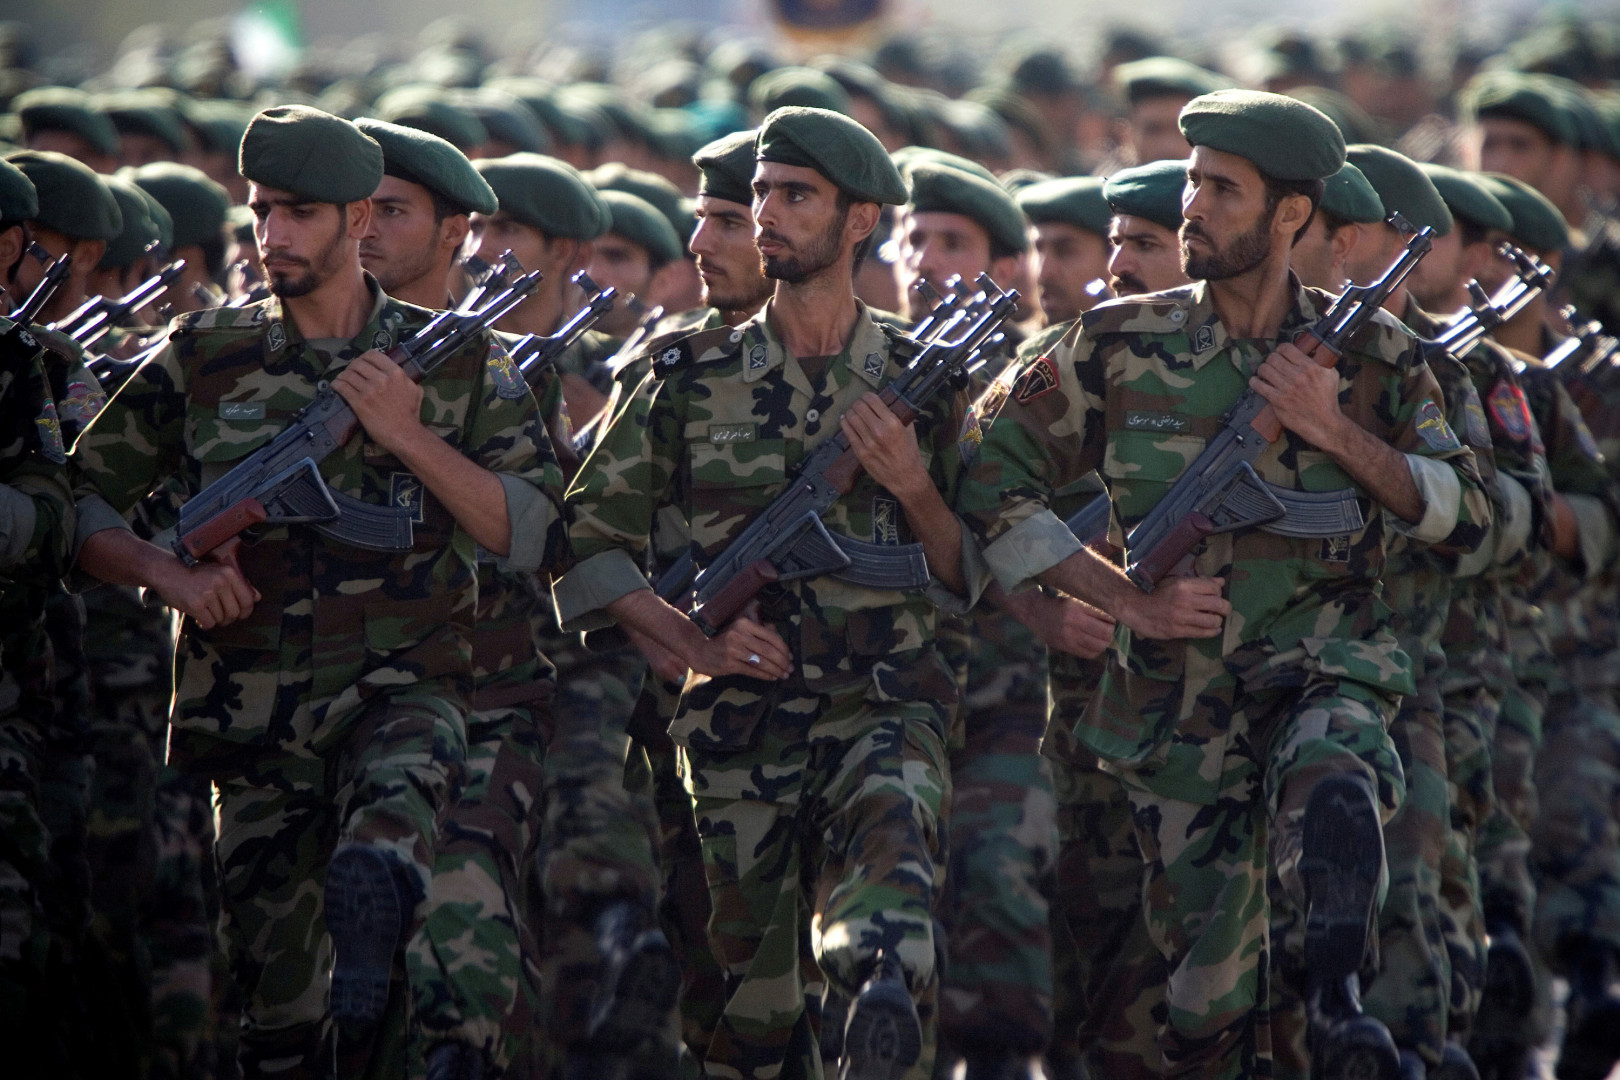 British MPs call for Iran’s revolutionary guard to be designated a terrorist organization